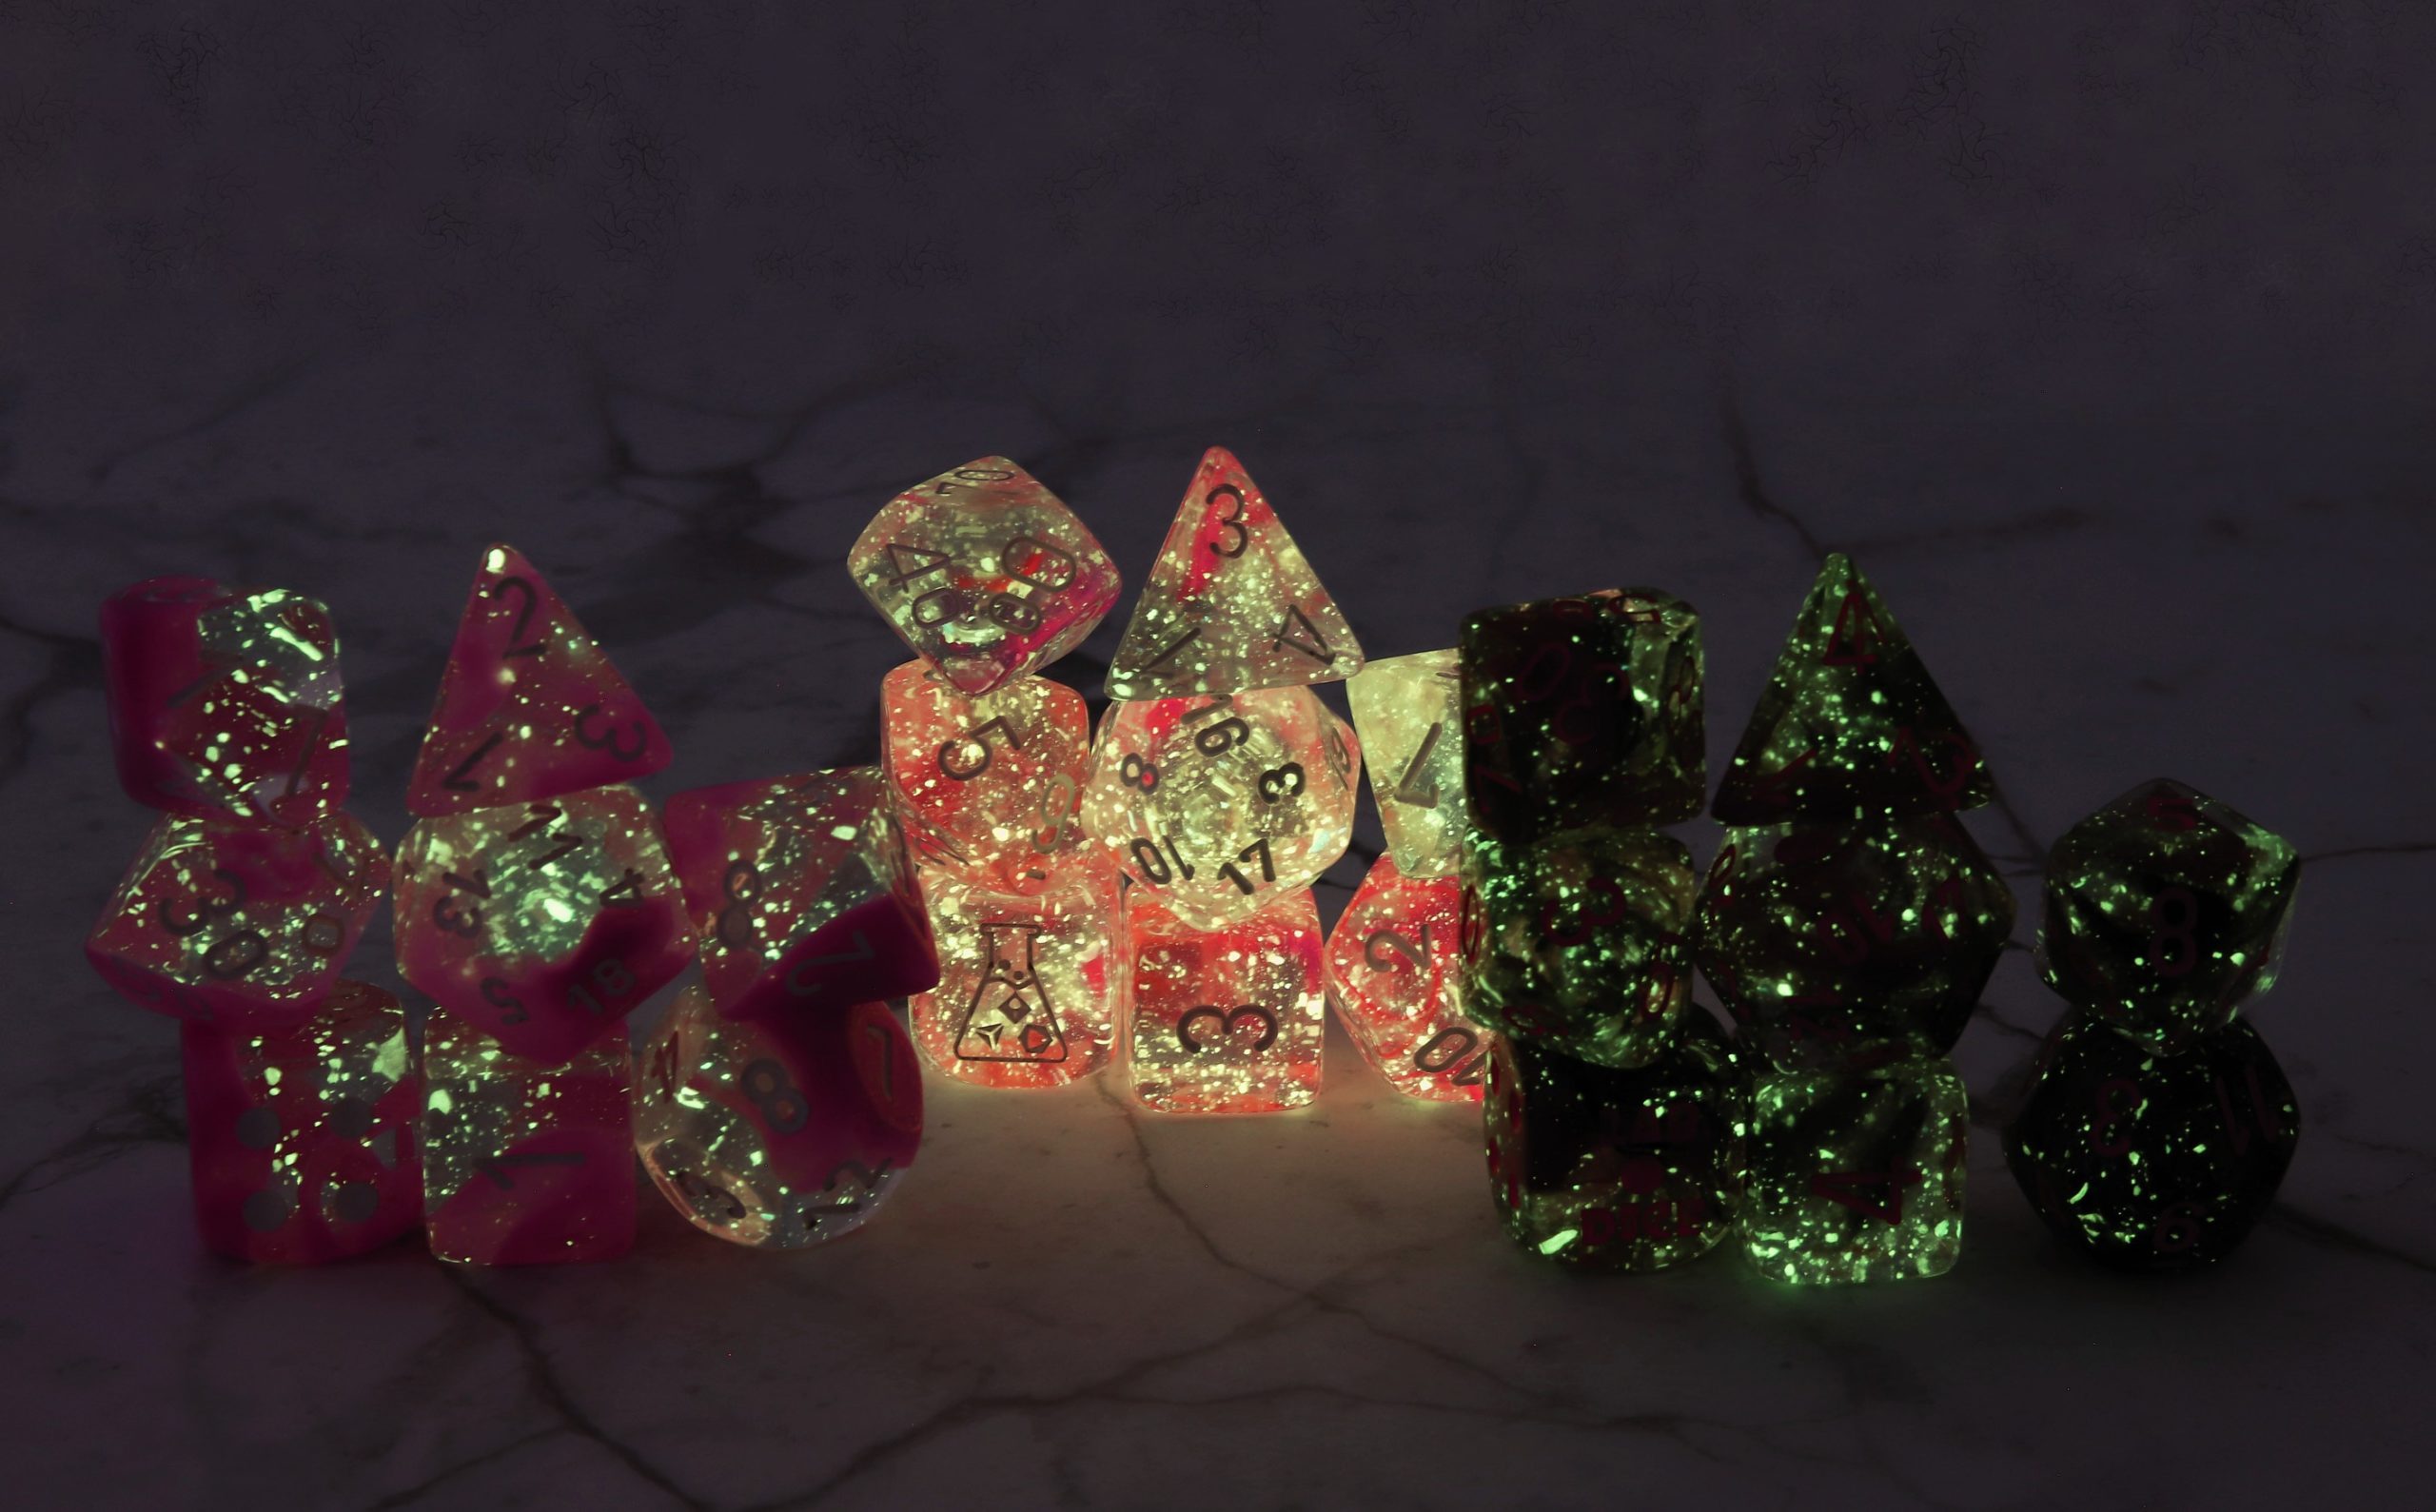 Chessex Luminary dice in the dark